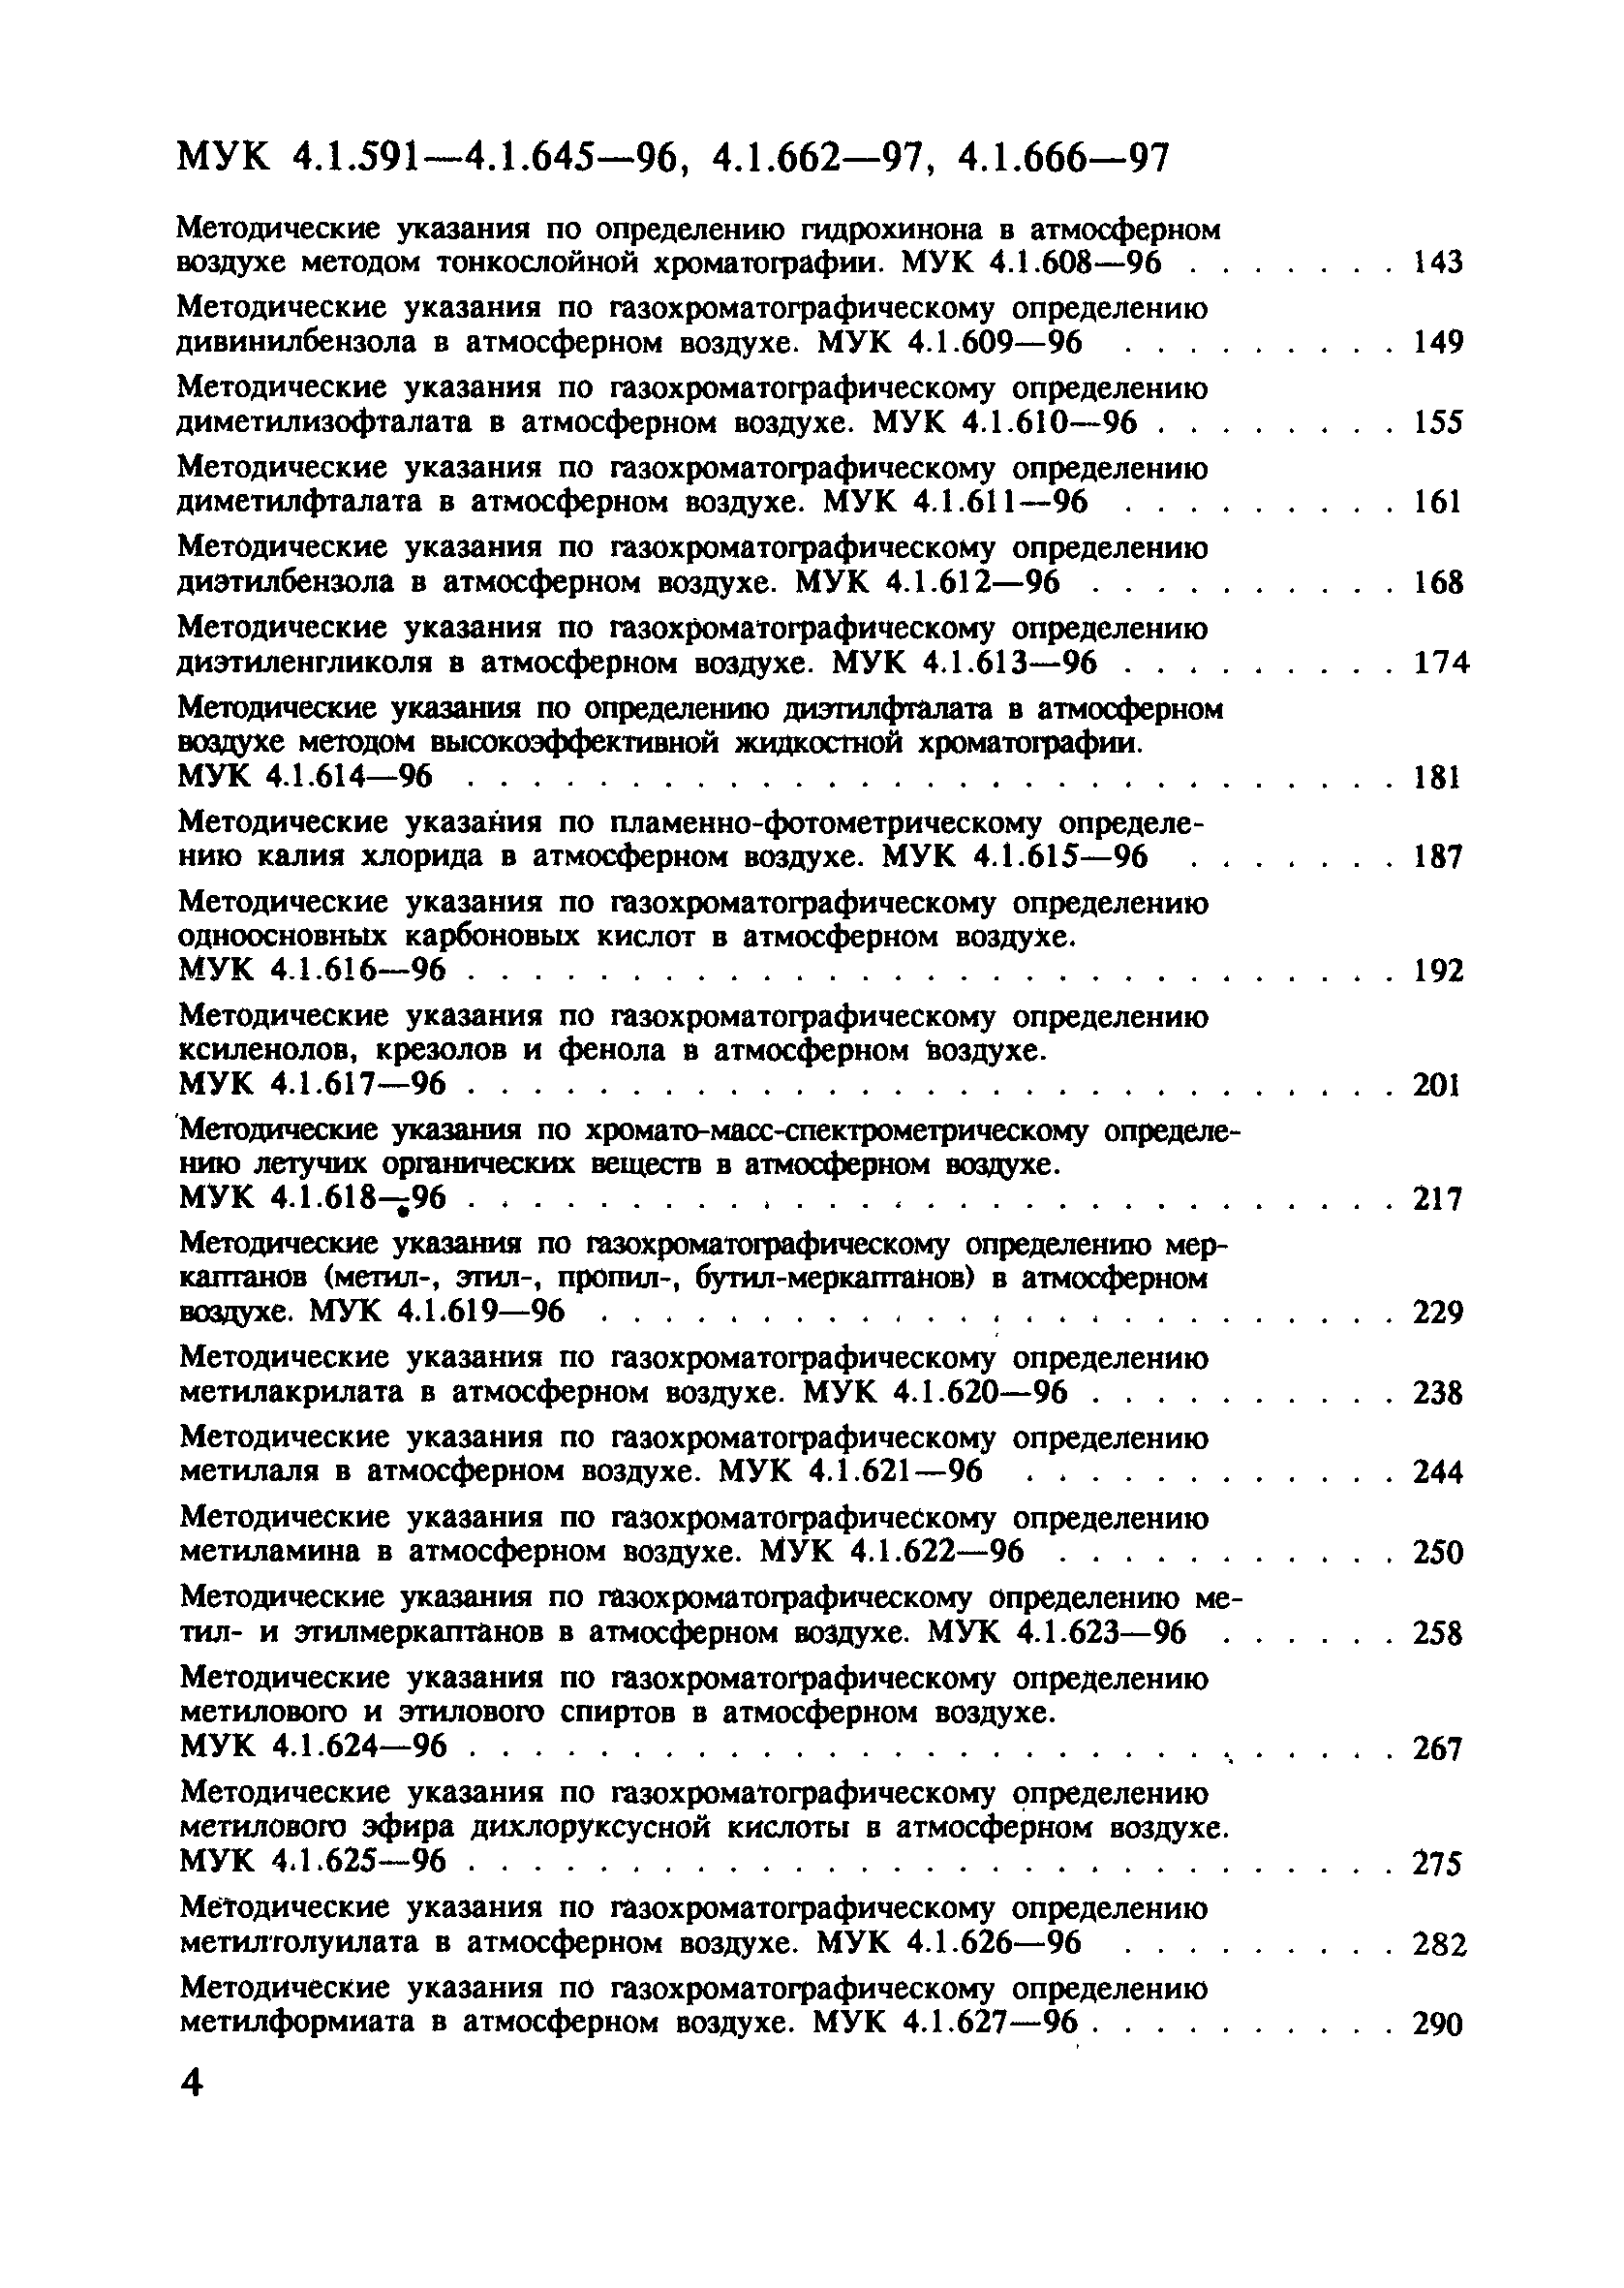 МУК 4.1.621-96